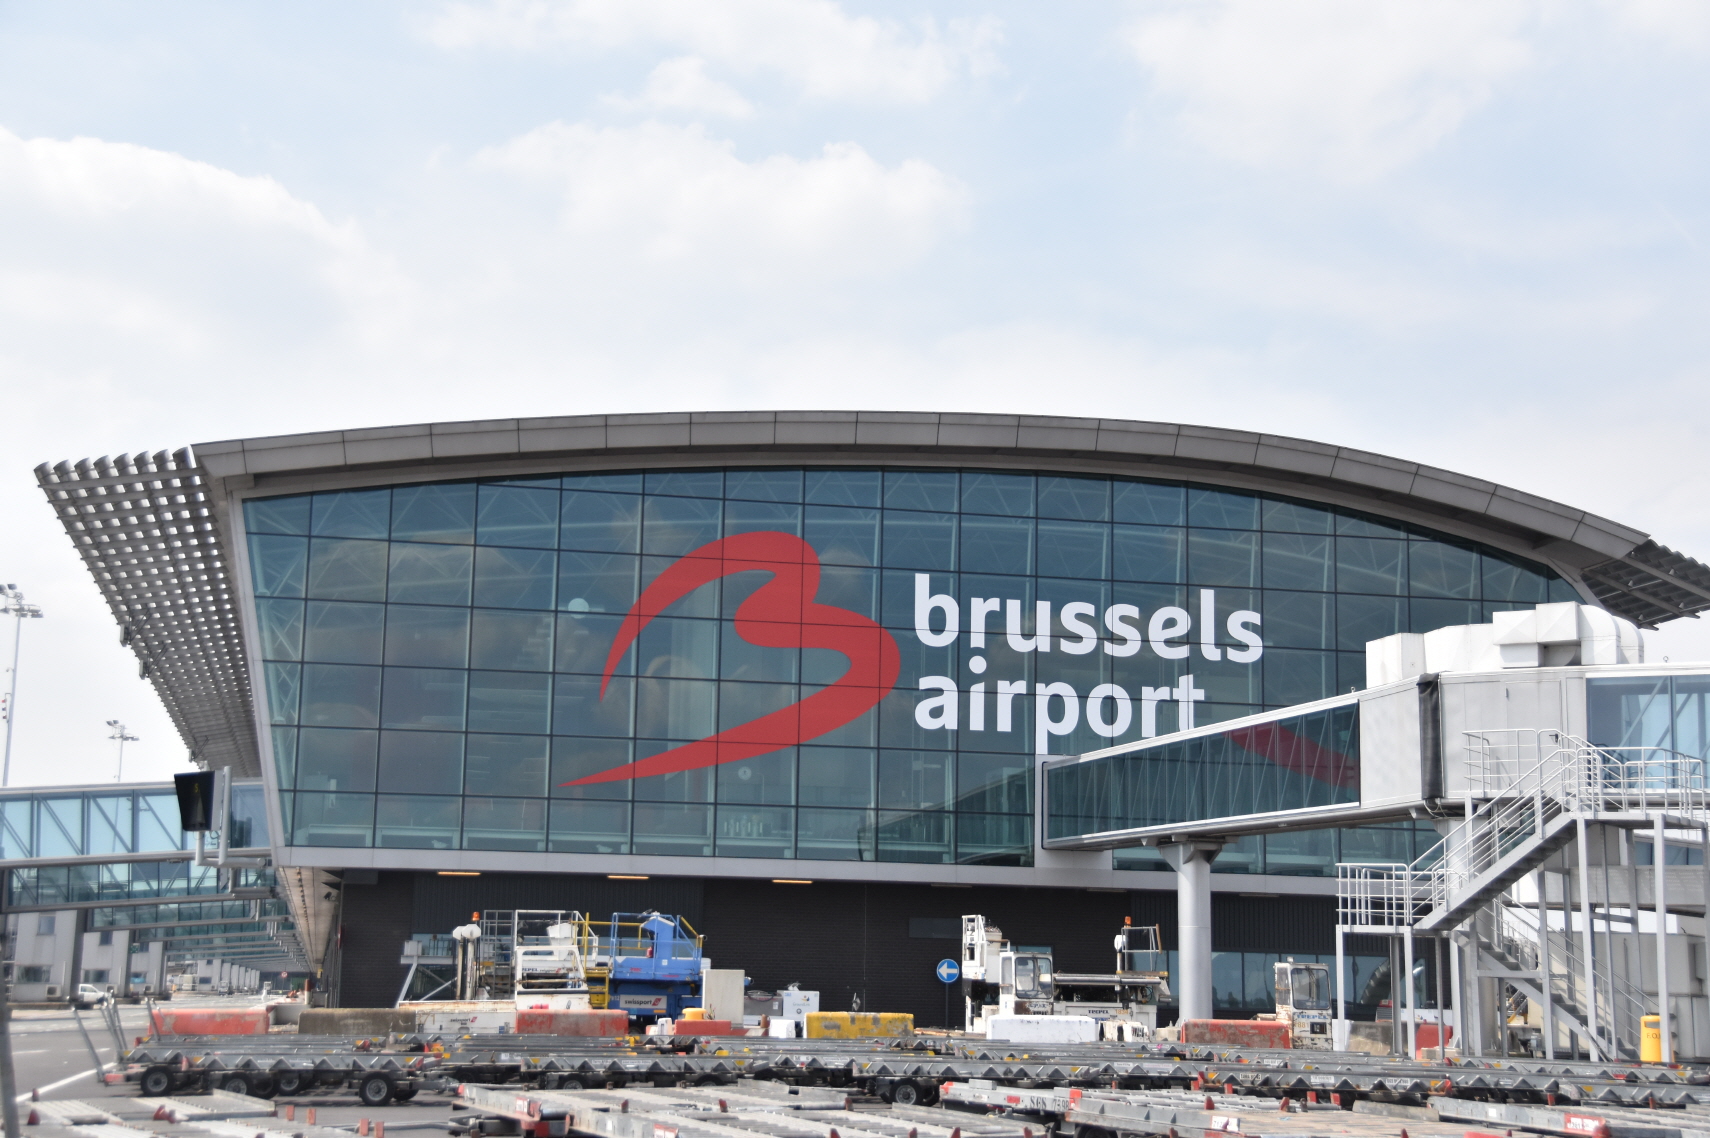 유럽의 허브 공항 중 하나로 꼽히는 벨기에 브뤼셀 공항. 한국인 여행자에 대한 격리면제 조치가 시행되고 있다. 벨기에 플랜더스 관광청 제공.